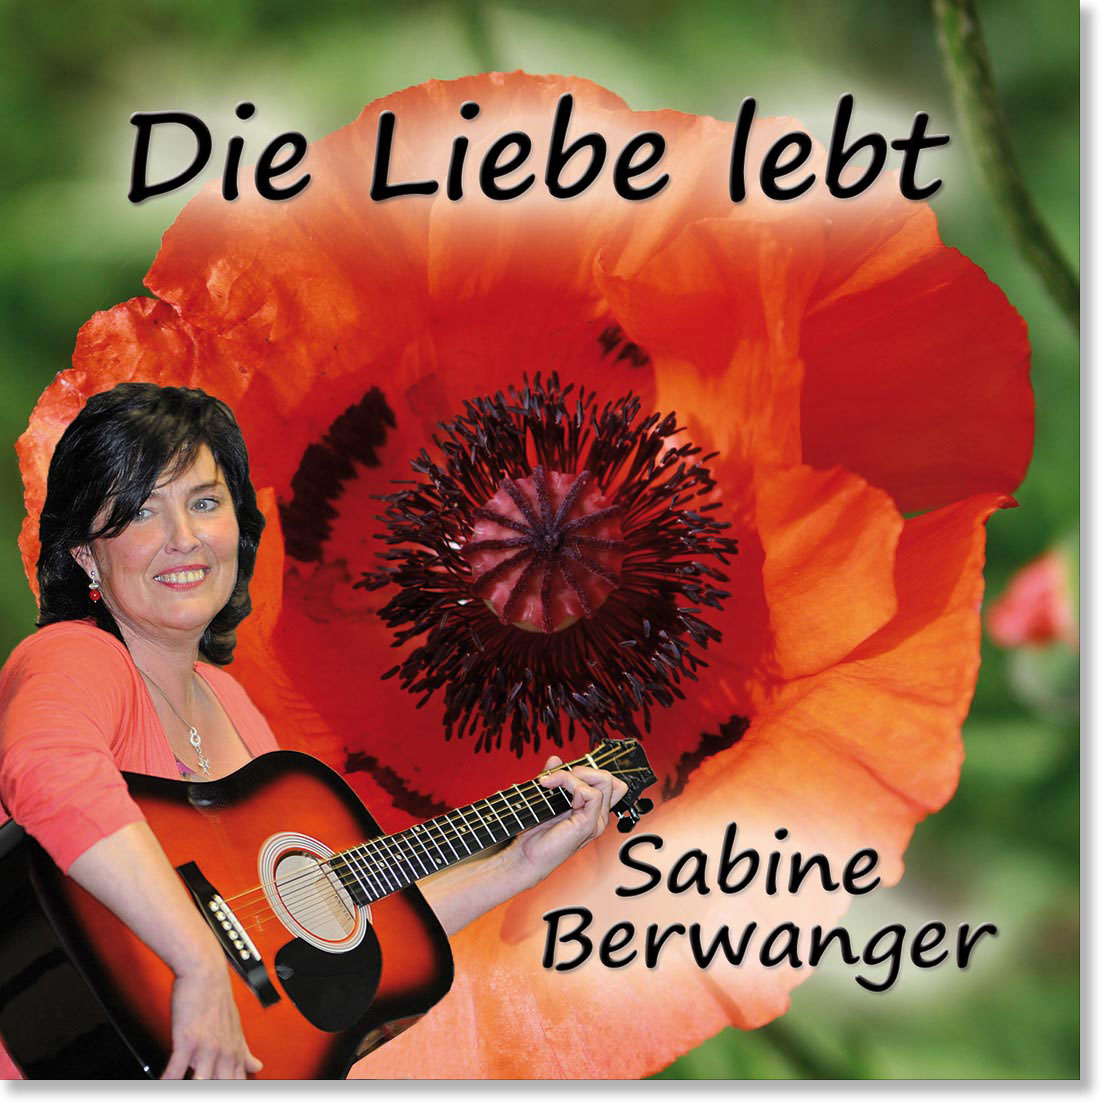 Mein Herz singt Sabine Berwanger